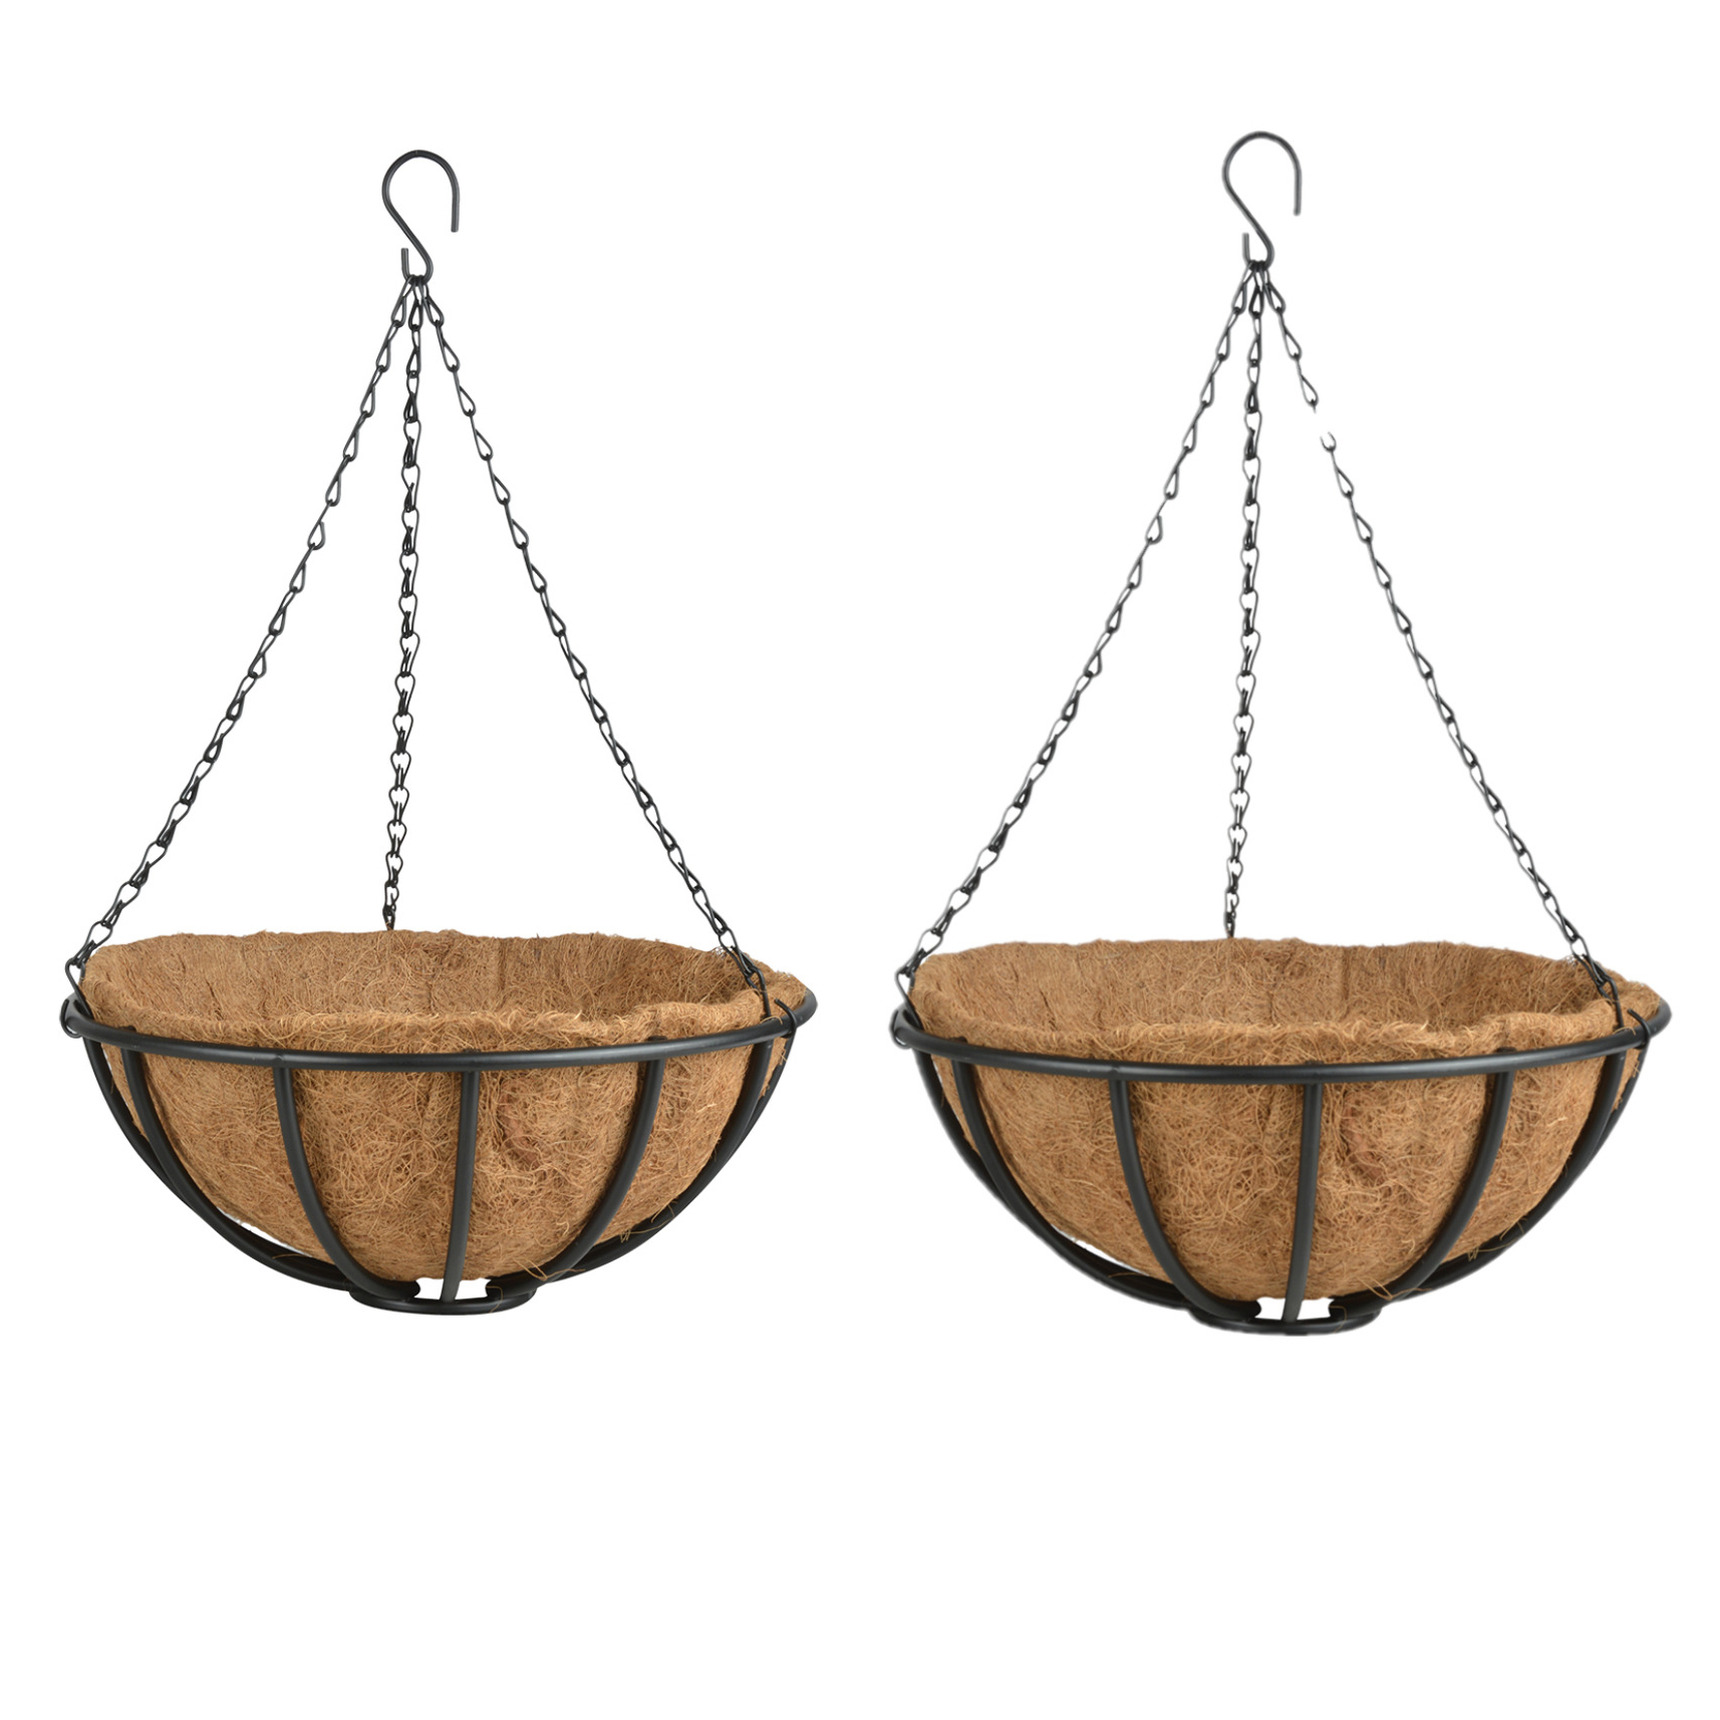 2x stuks metalen hanging baskets-plantenbakken met ketting 35 cm inclusief kokosinlegvel